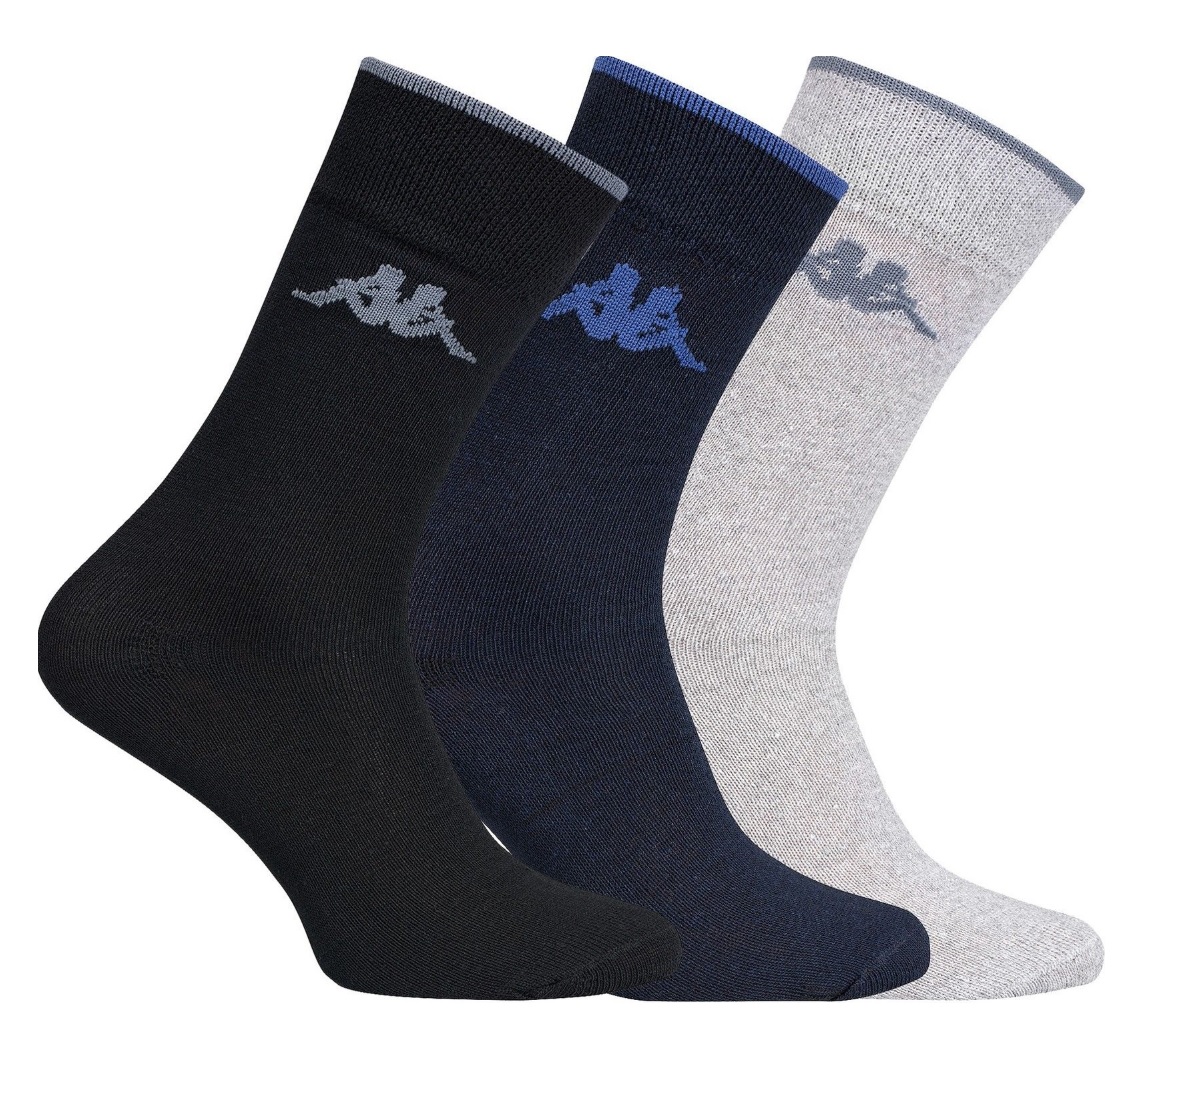 5er-Pack Kappa Herren Socken für nur 4,99 Euro inkl. Versand